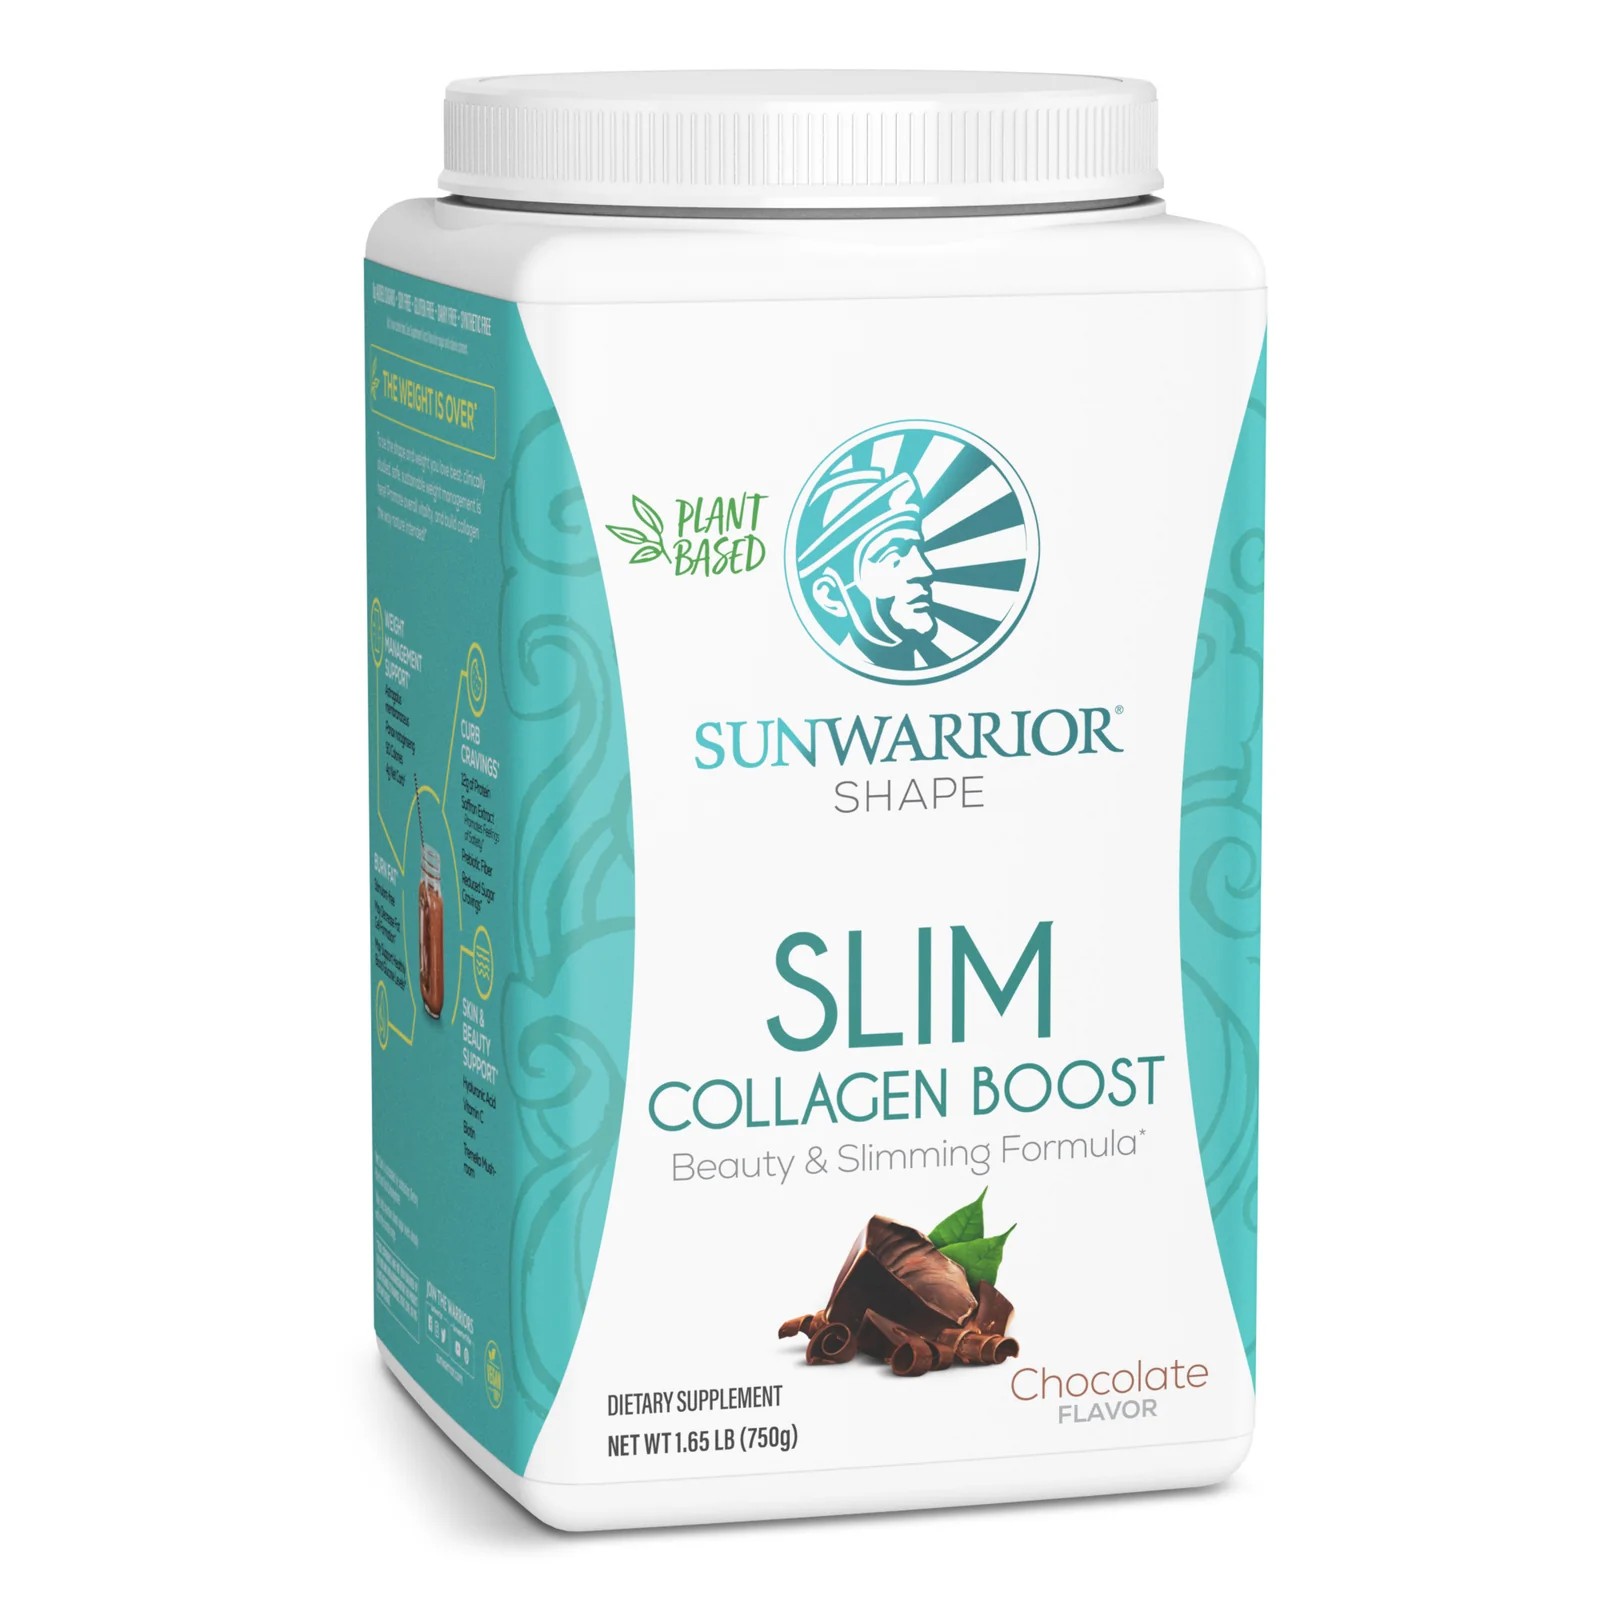 Sunwarrior Slim Collagen Boost 1